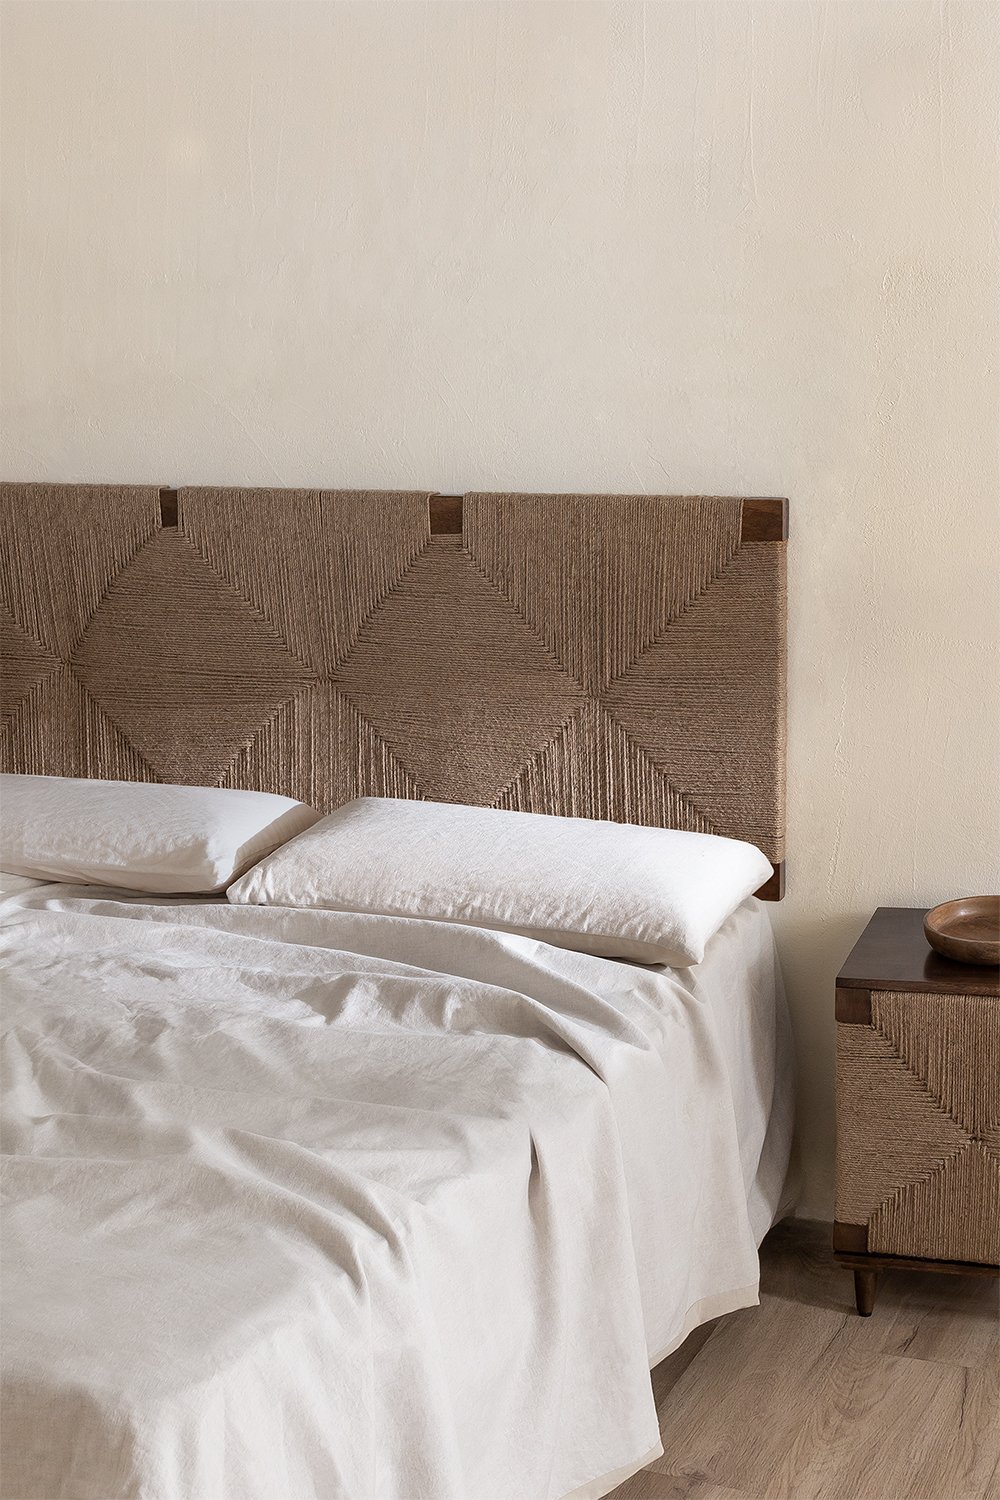 Cabecero Merapi barrotes horizontales y verticales cama 150 cm